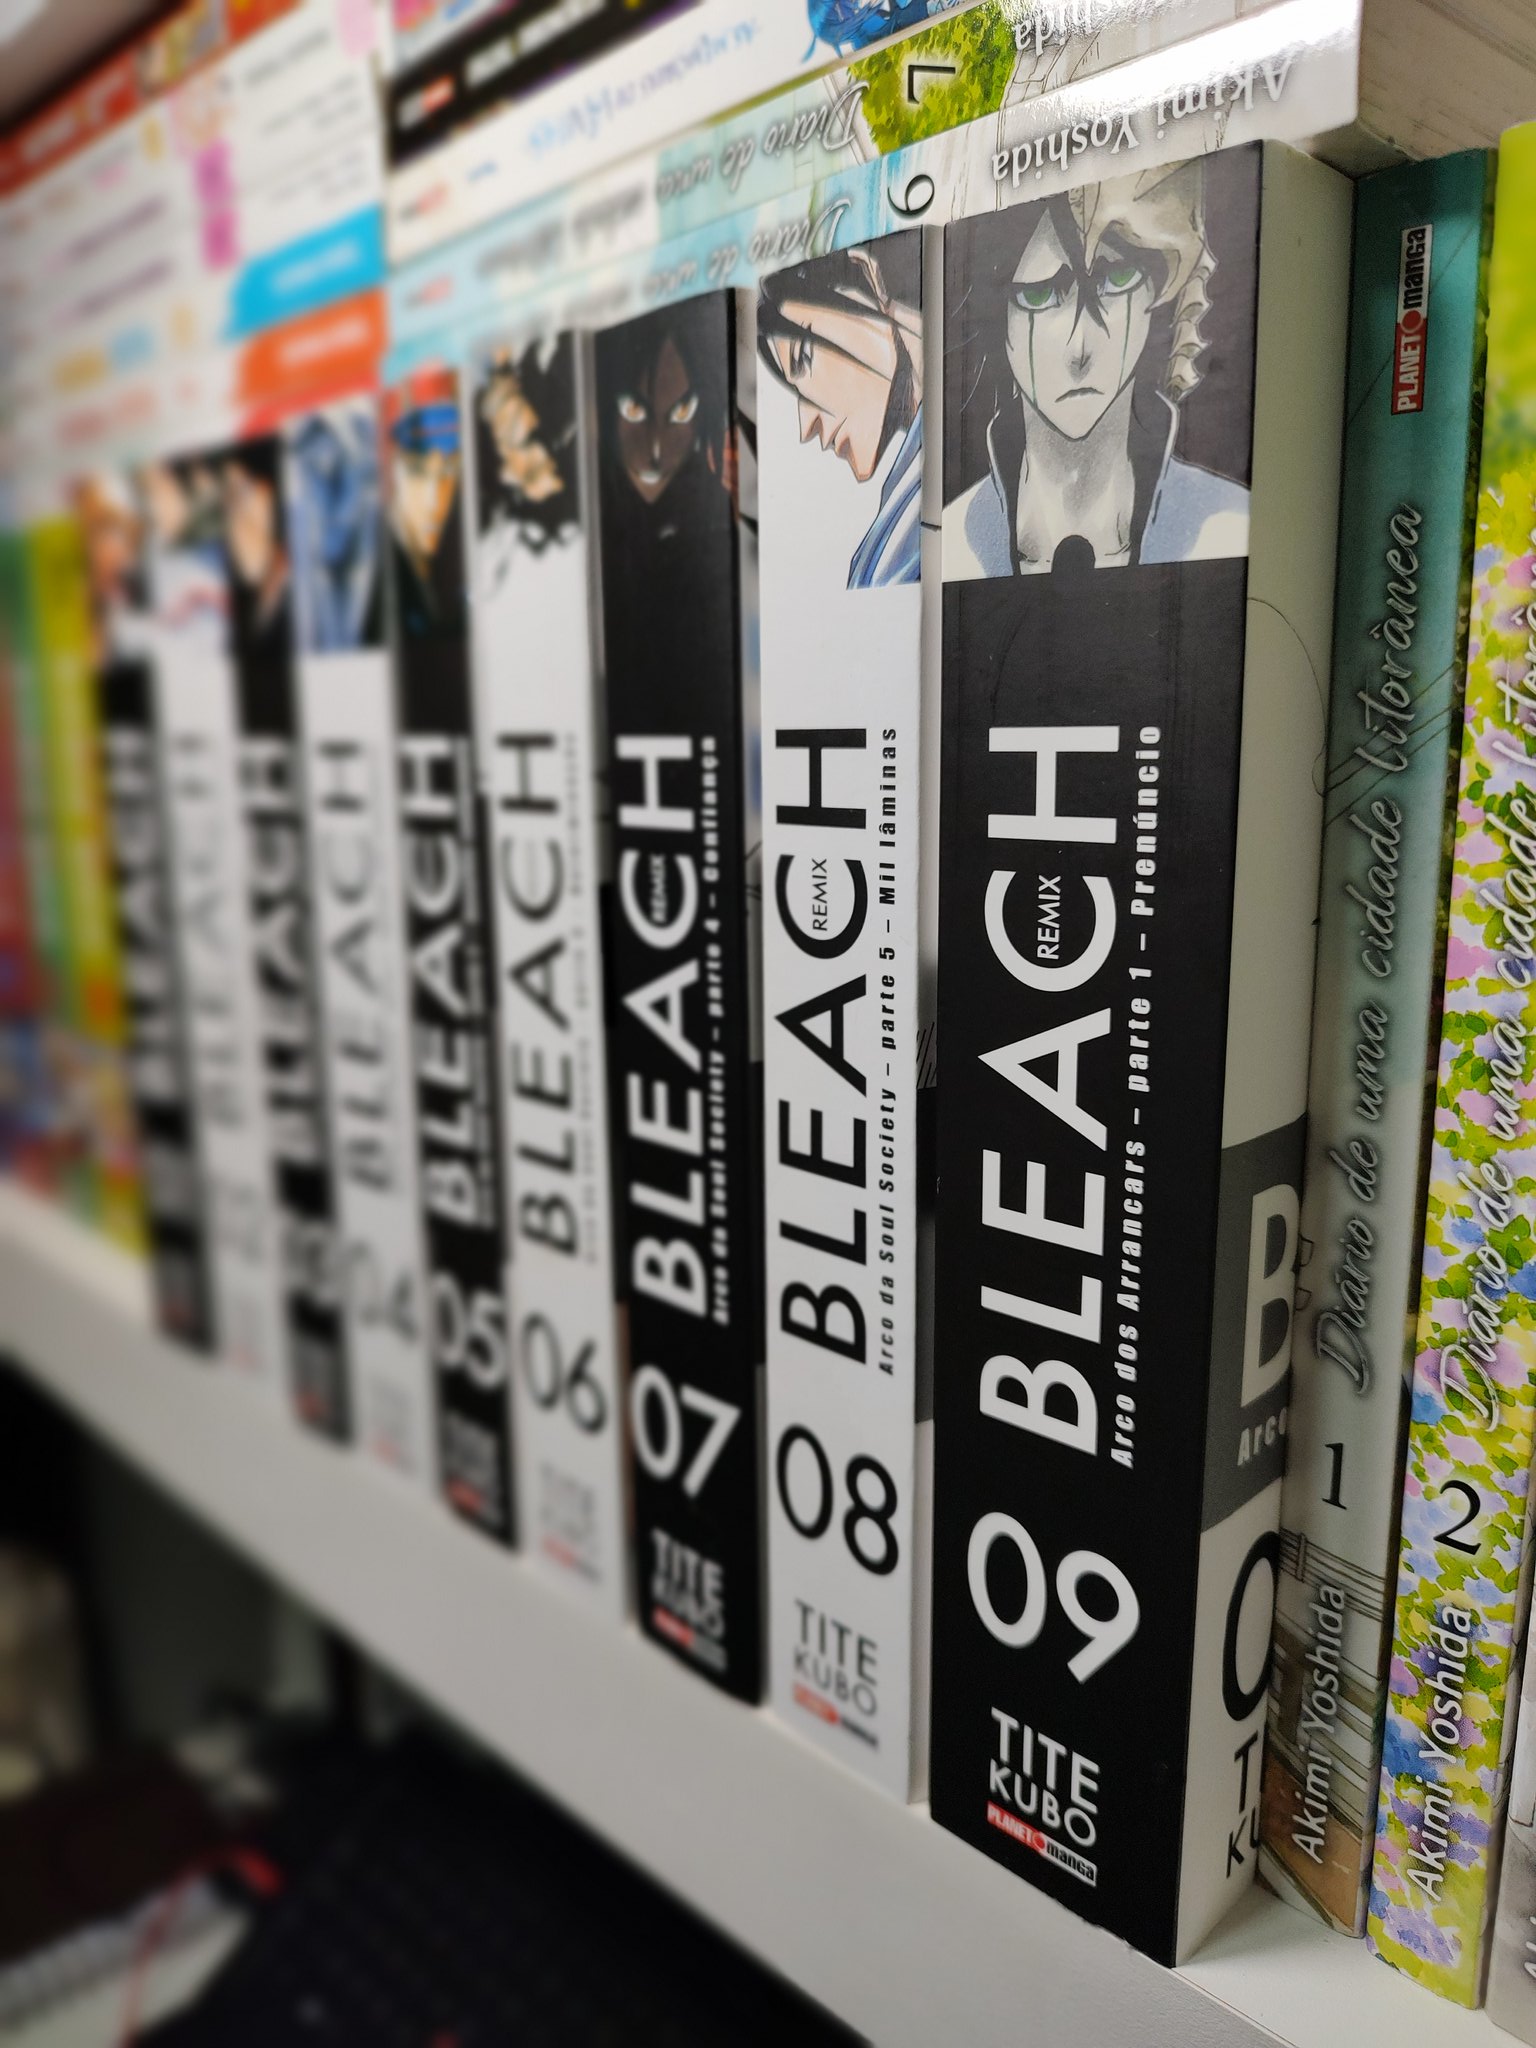 Mangás Brasil on X: Confira as fotos do lançamento da editora Panini -  Bleach Remix volume 9. Completo com 26 volumes. Preço: R$59,90. Sinopse:  Hueco Mundo, Hougyoku, Arrancar, Espada Os planos de